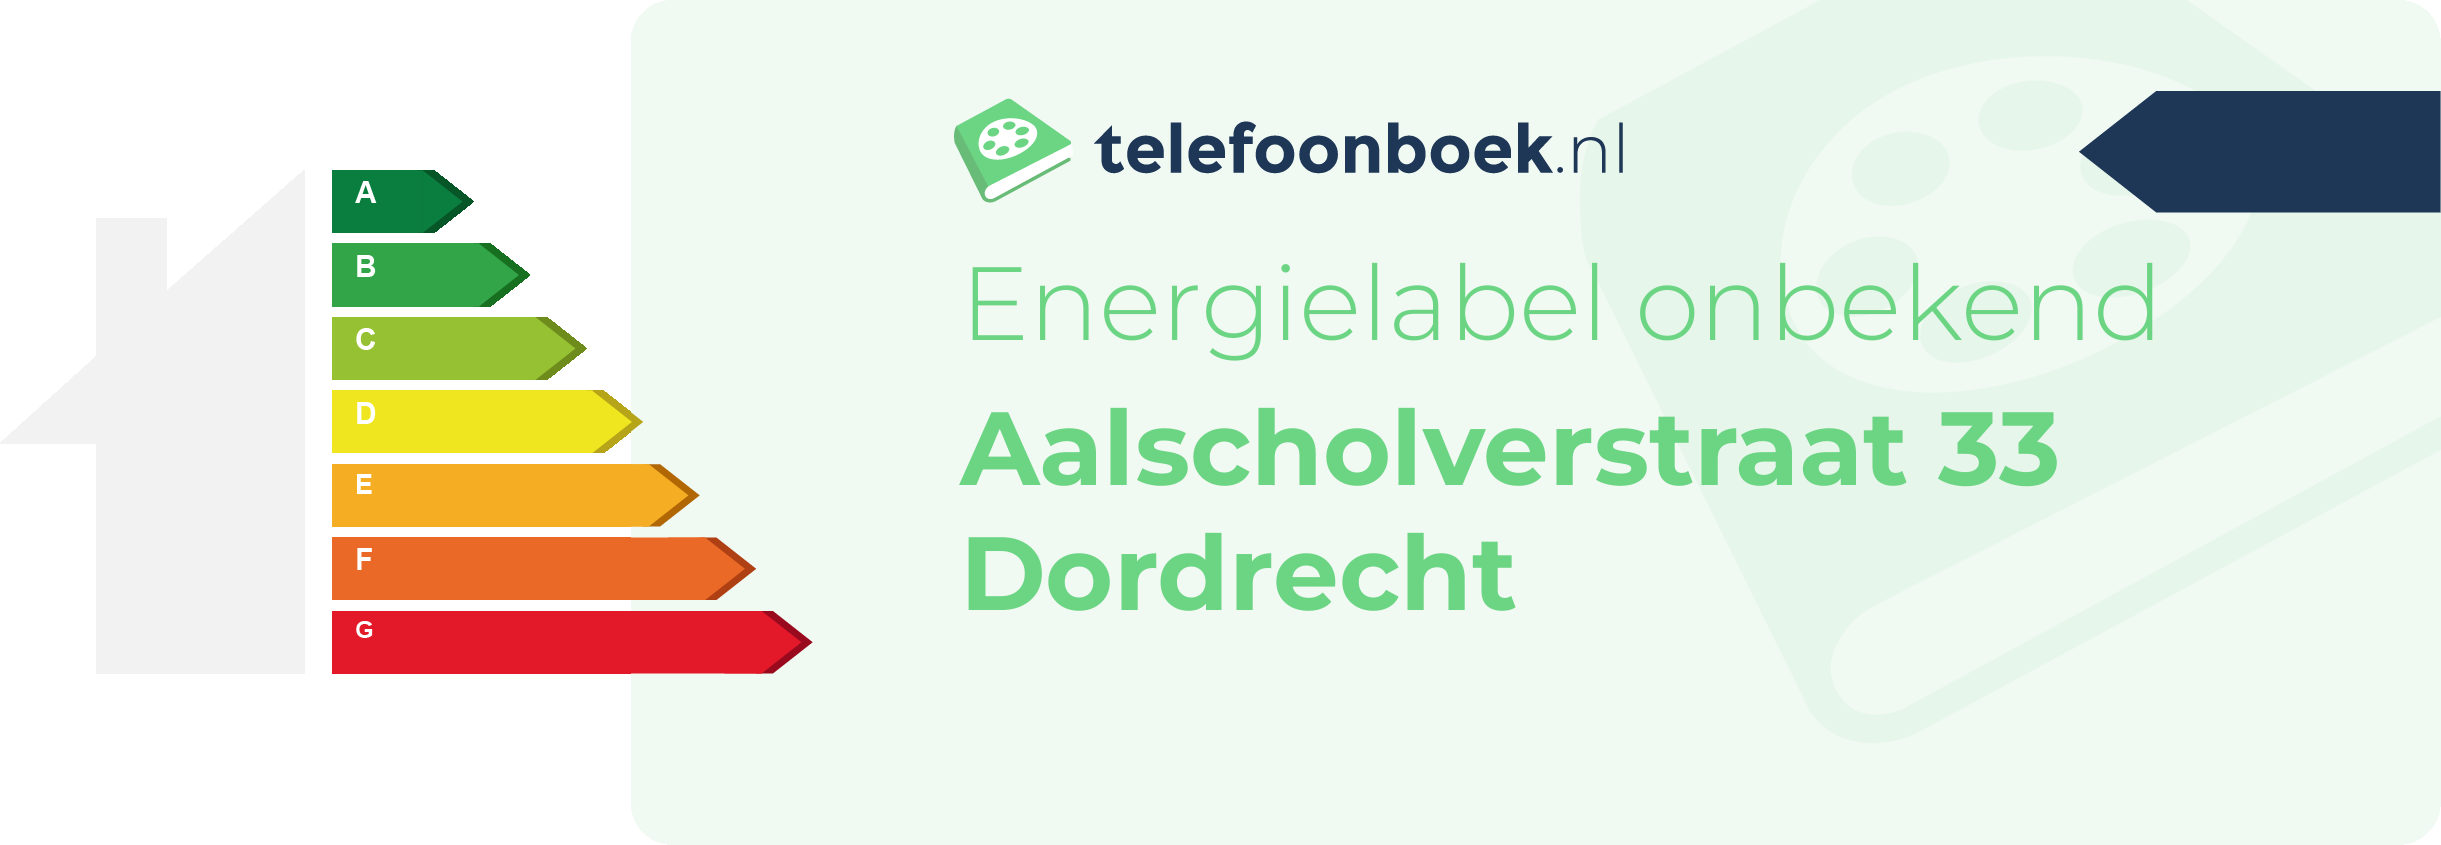 Energielabel Aalscholverstraat 33 Dordrecht